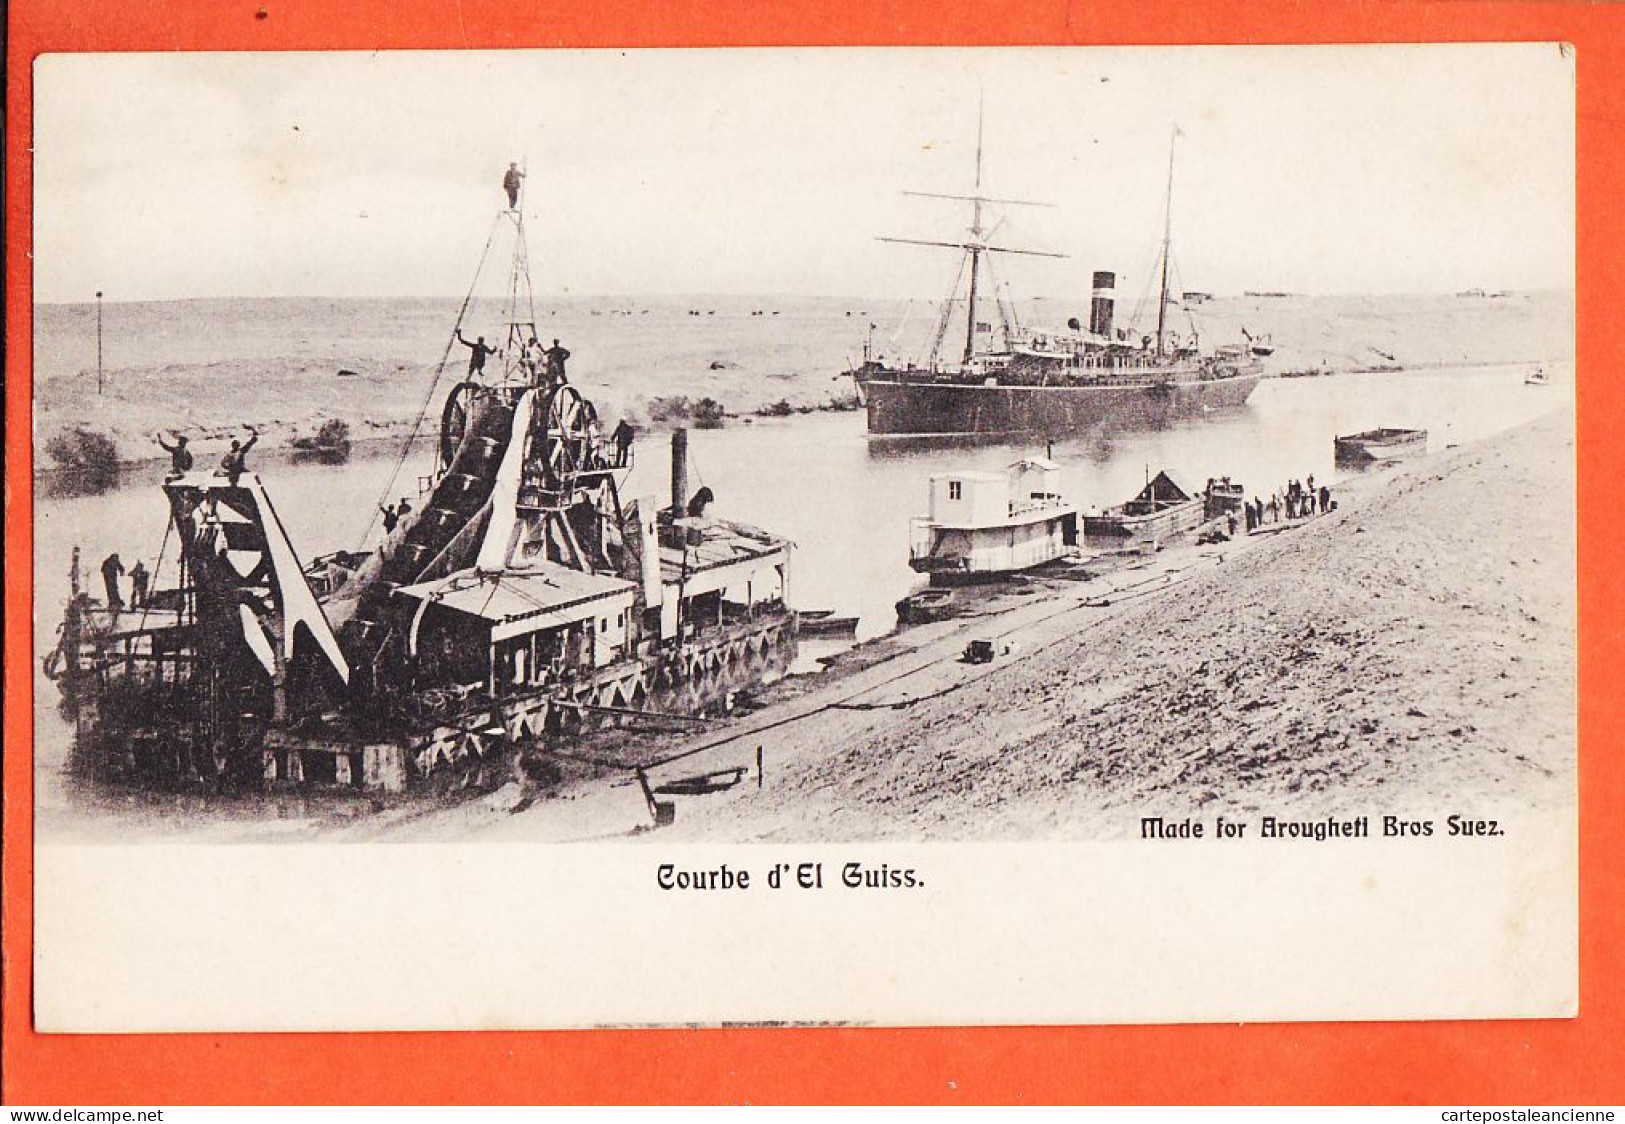 33858 / ⭐ Canal SUEZ Egypte Courbe EL GUISS Barge Dragage Drague à Deversoir Paquebot 1900s-BROUGHETTI Bross Egypt - Suez